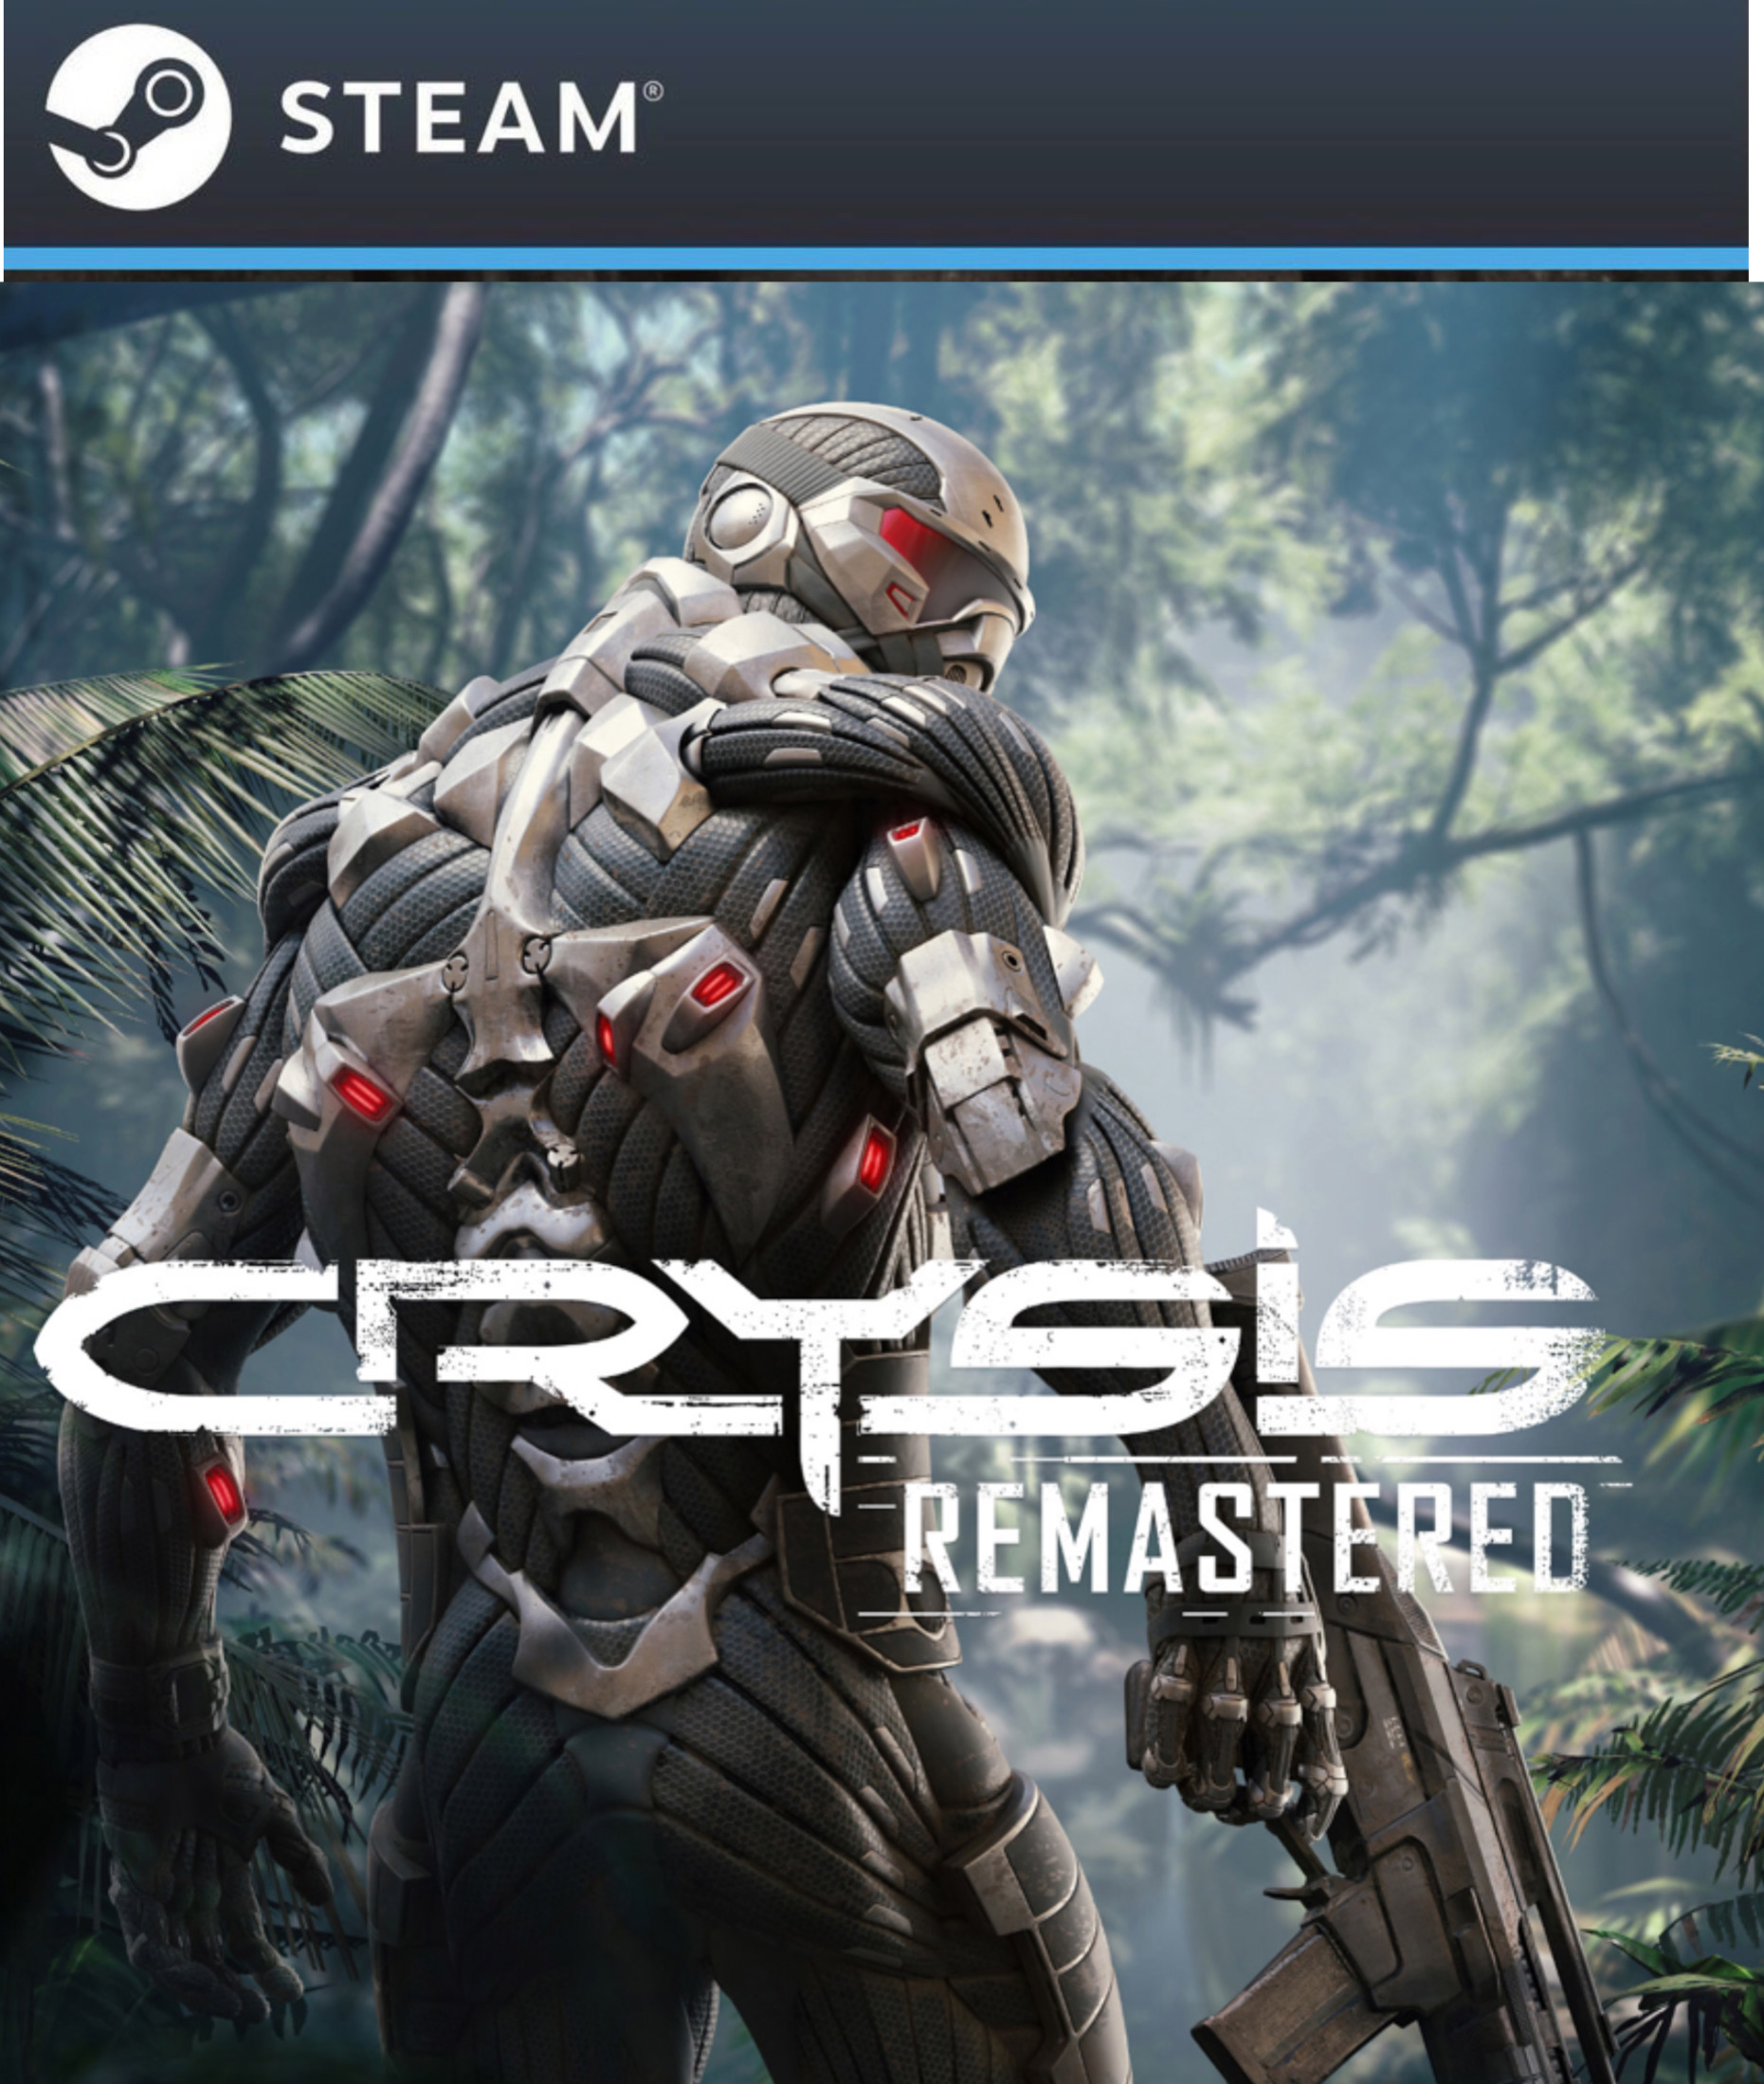 Crysis ключи. Crysis 1 Remastered. Crysis Remastered Xbox. Crysis Remastered Xbox one. Crysis 3 Remastered.